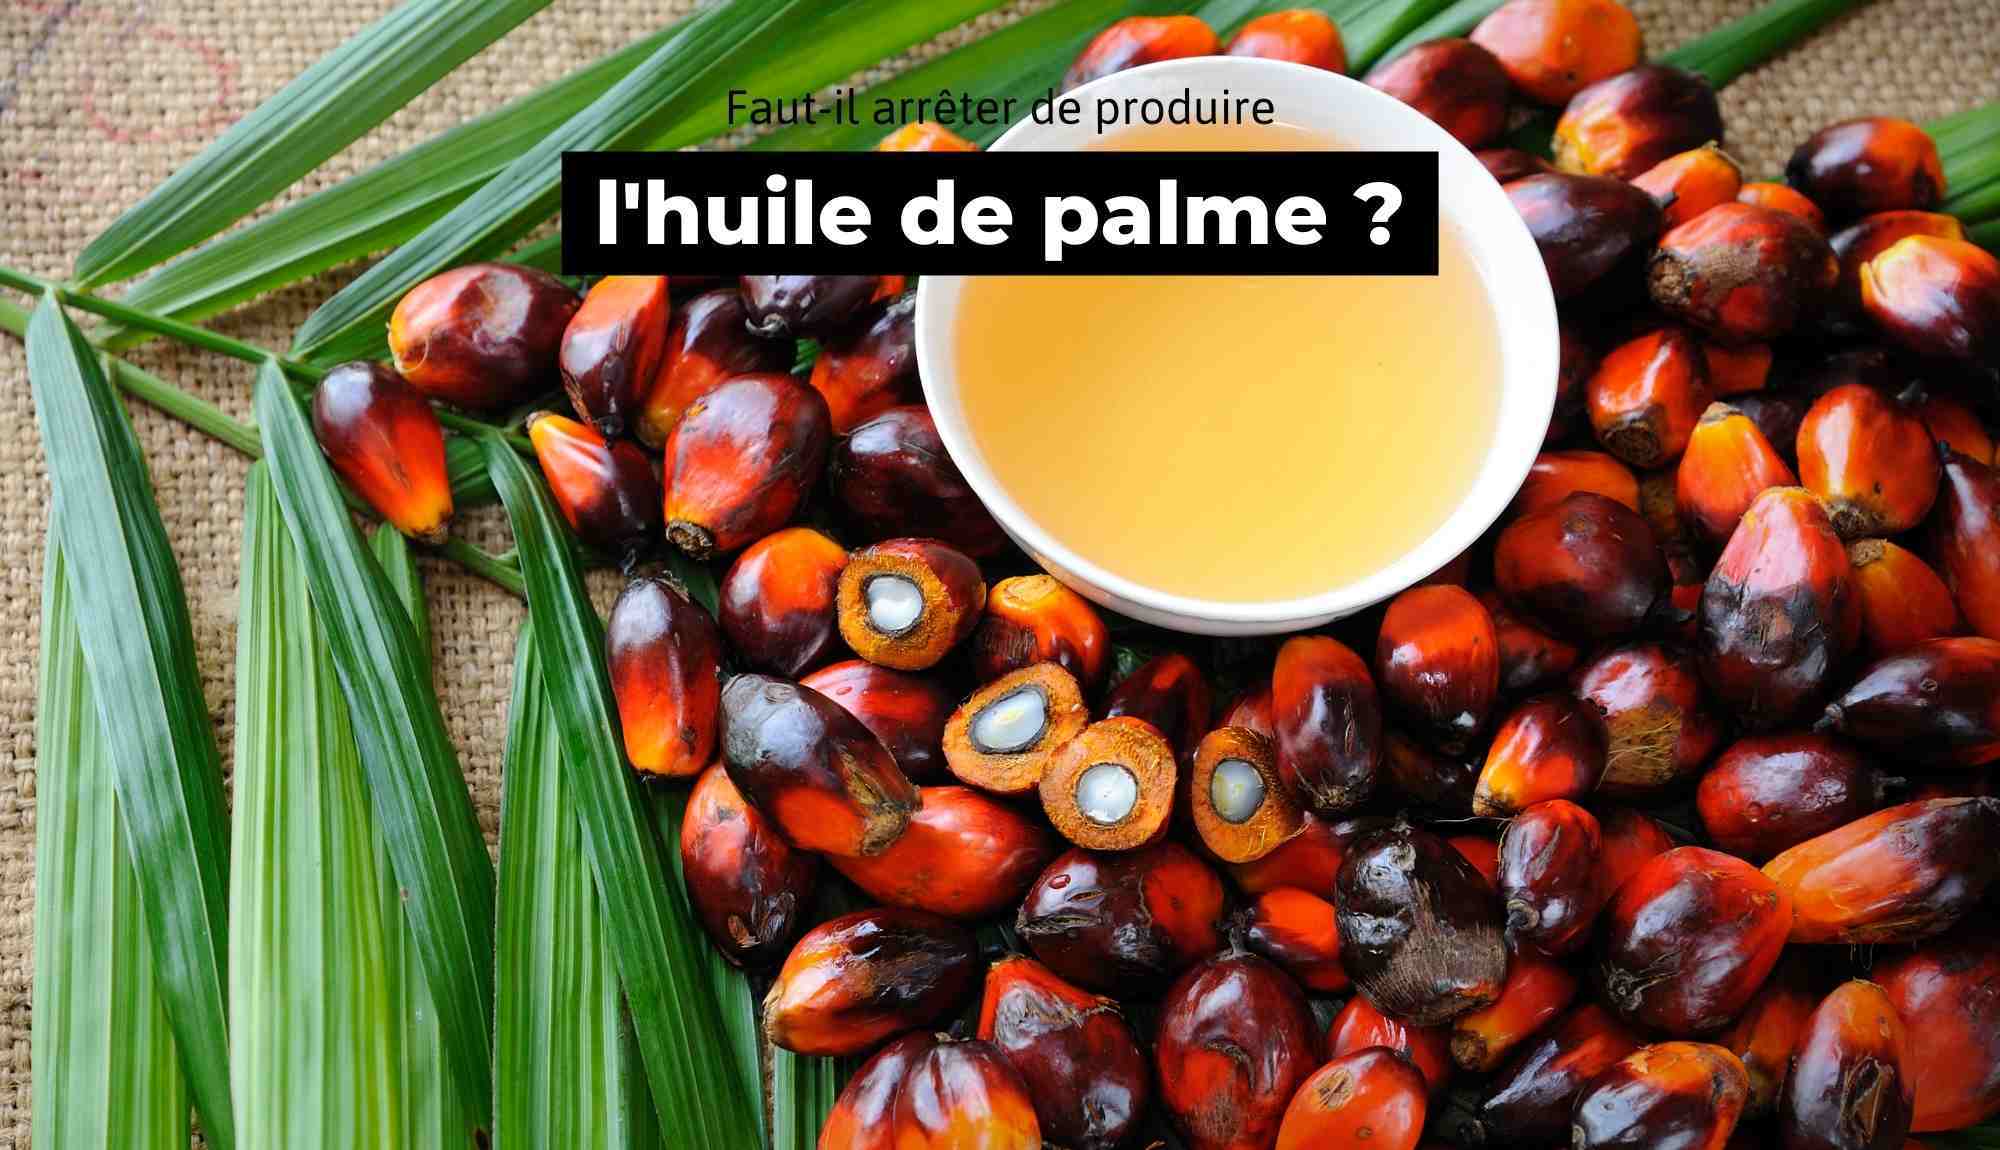 Faut-il arrêter de produire de l'huile de palme ? - The Trust Society